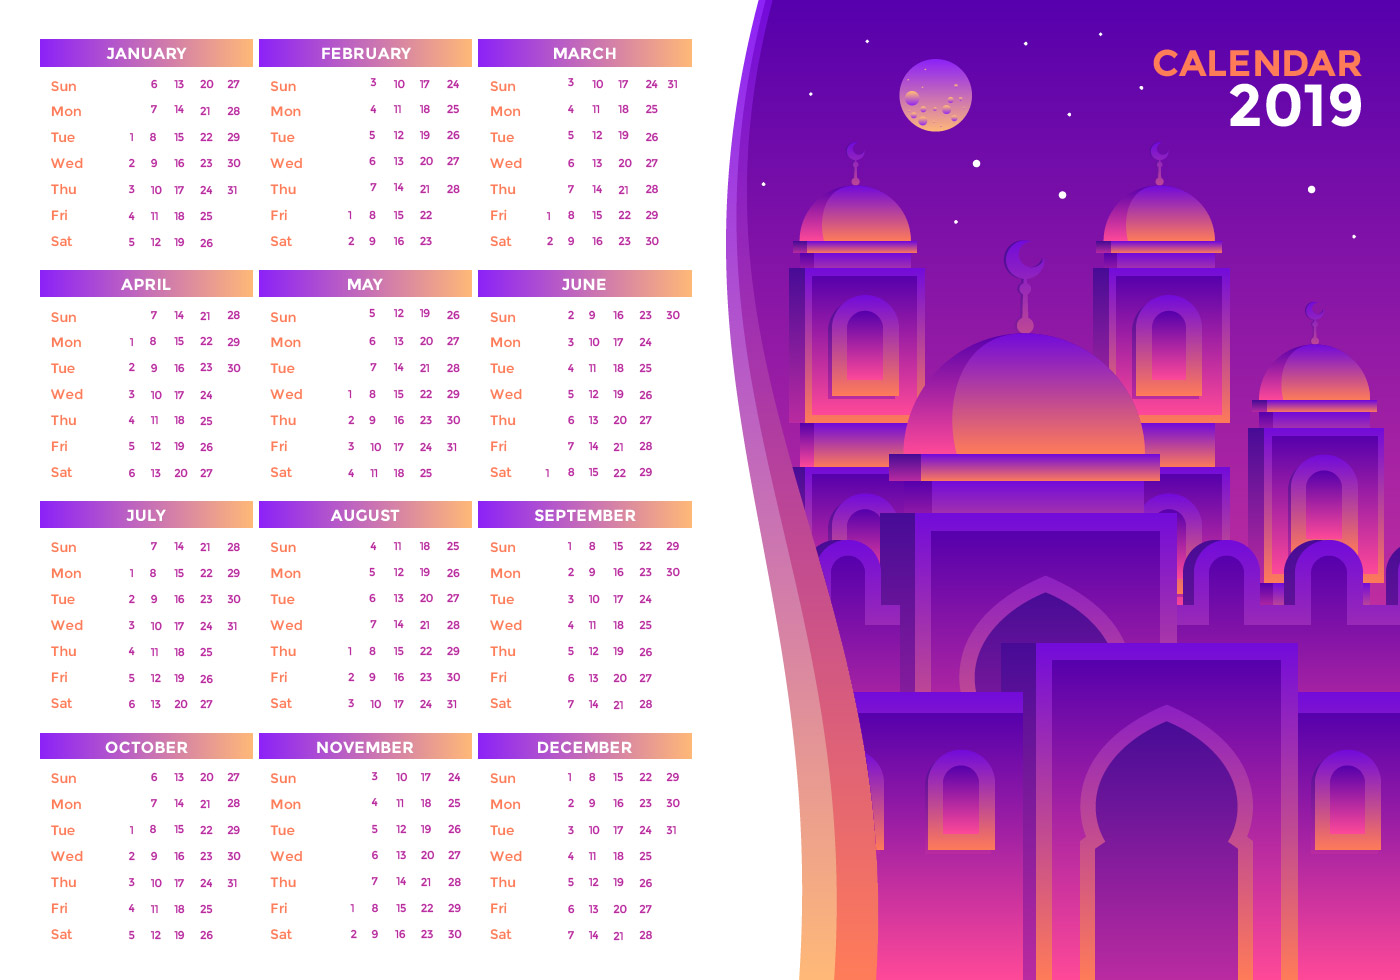 Kalendar islam 2020